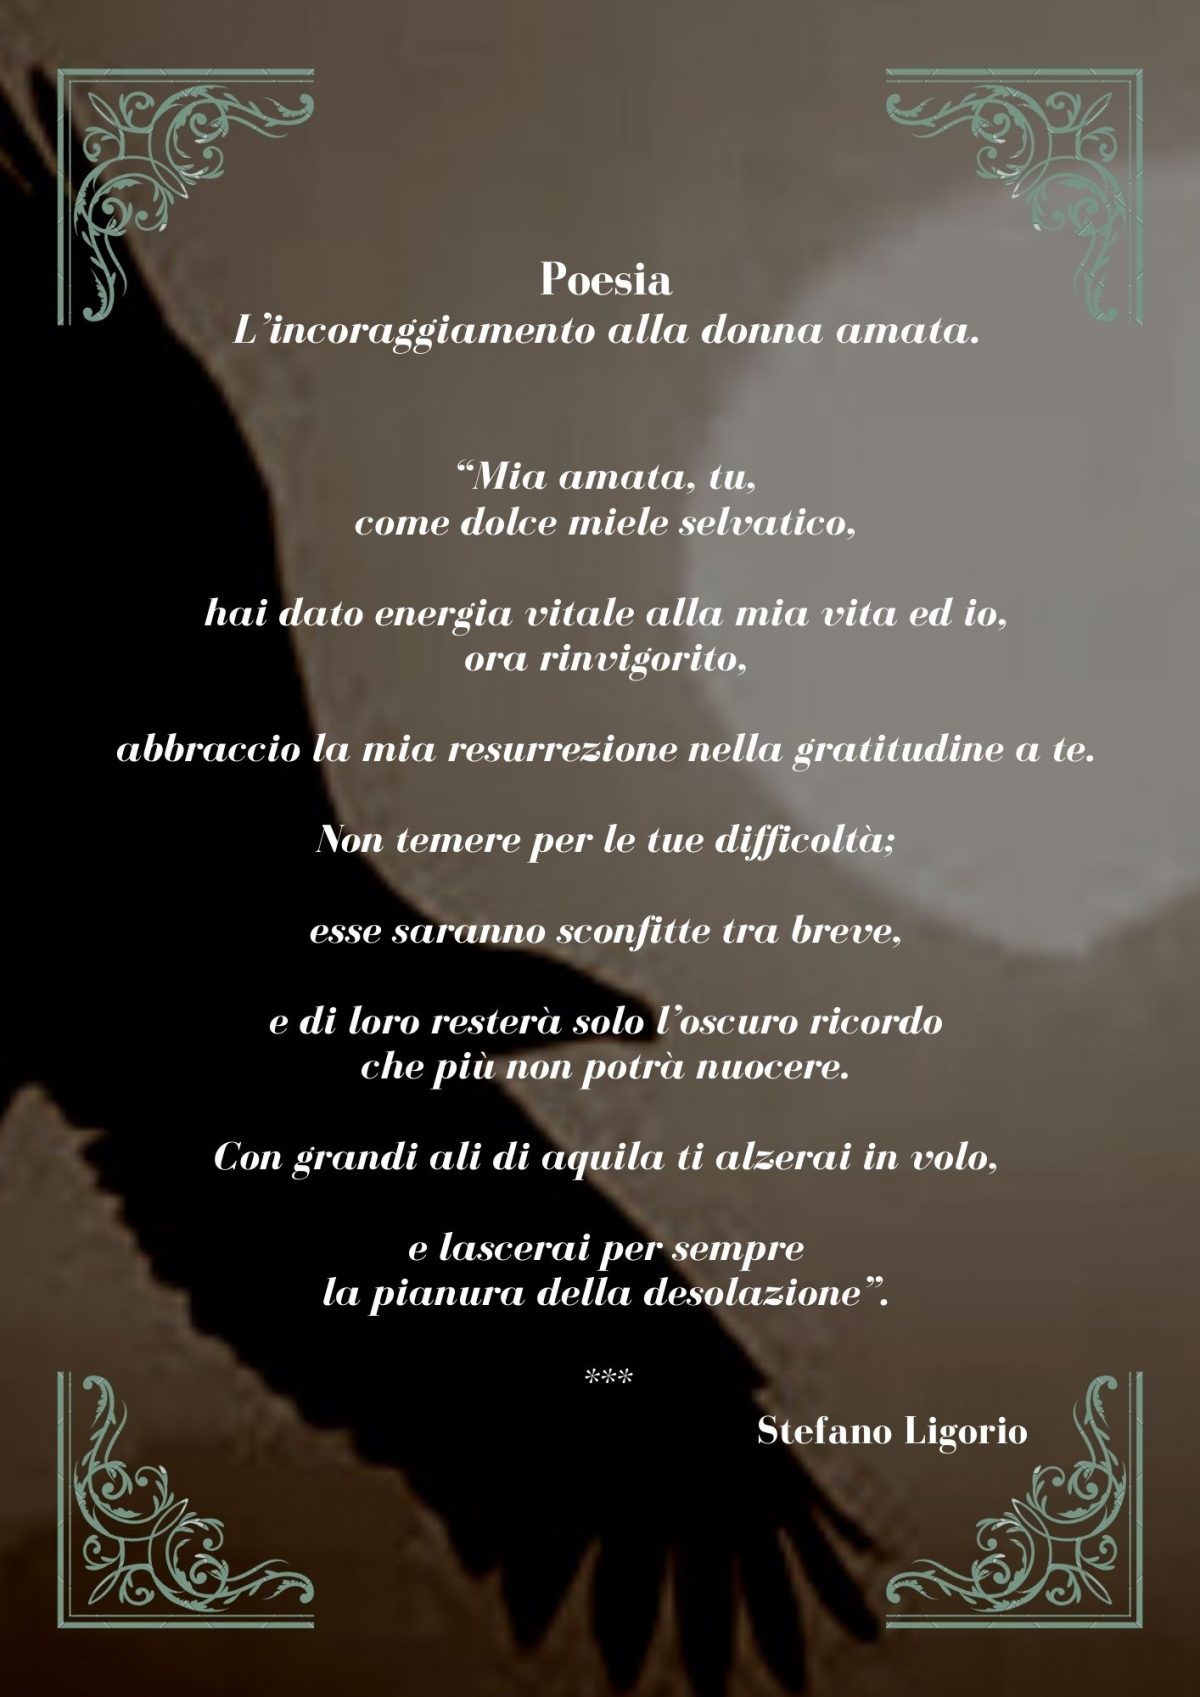 Poesie di Stefano Ligorio – L’incoraggiamento alla donna amata.